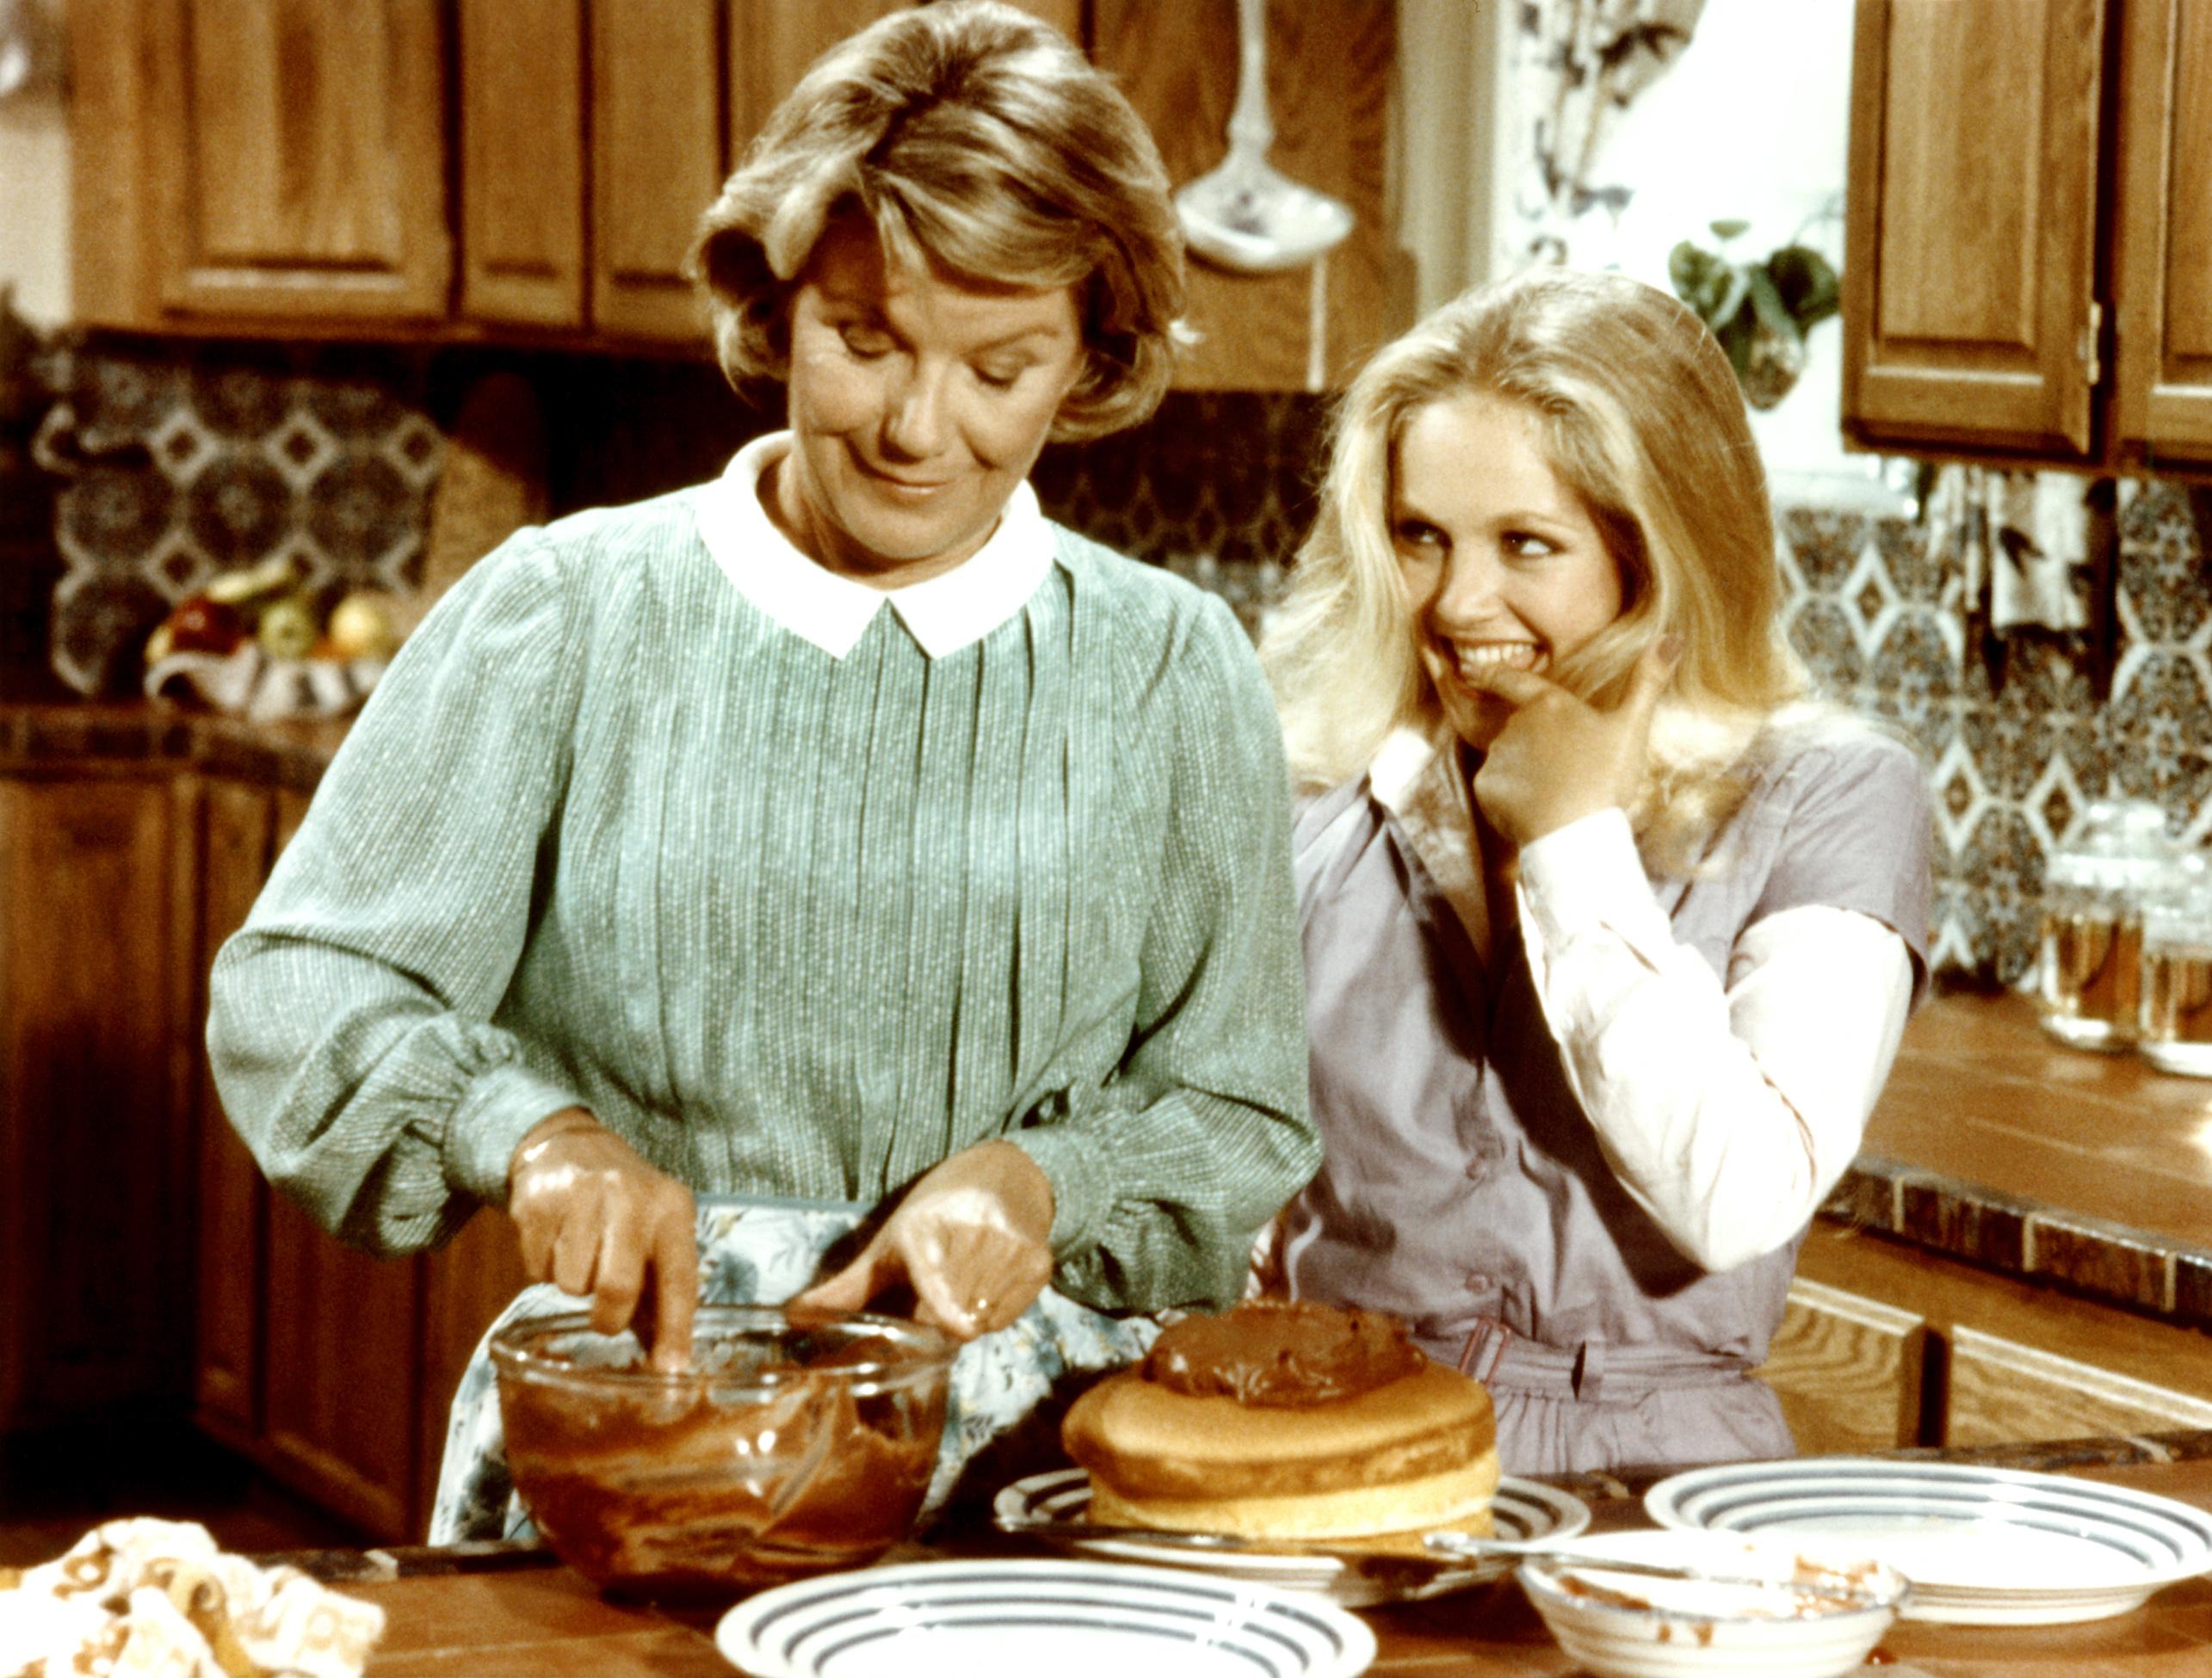 lucy ewing, în serialul dallas, în bucătărie cu bunica ei. îmbrăcată într-o bluză albă, cu vestă gri, părul blond lung